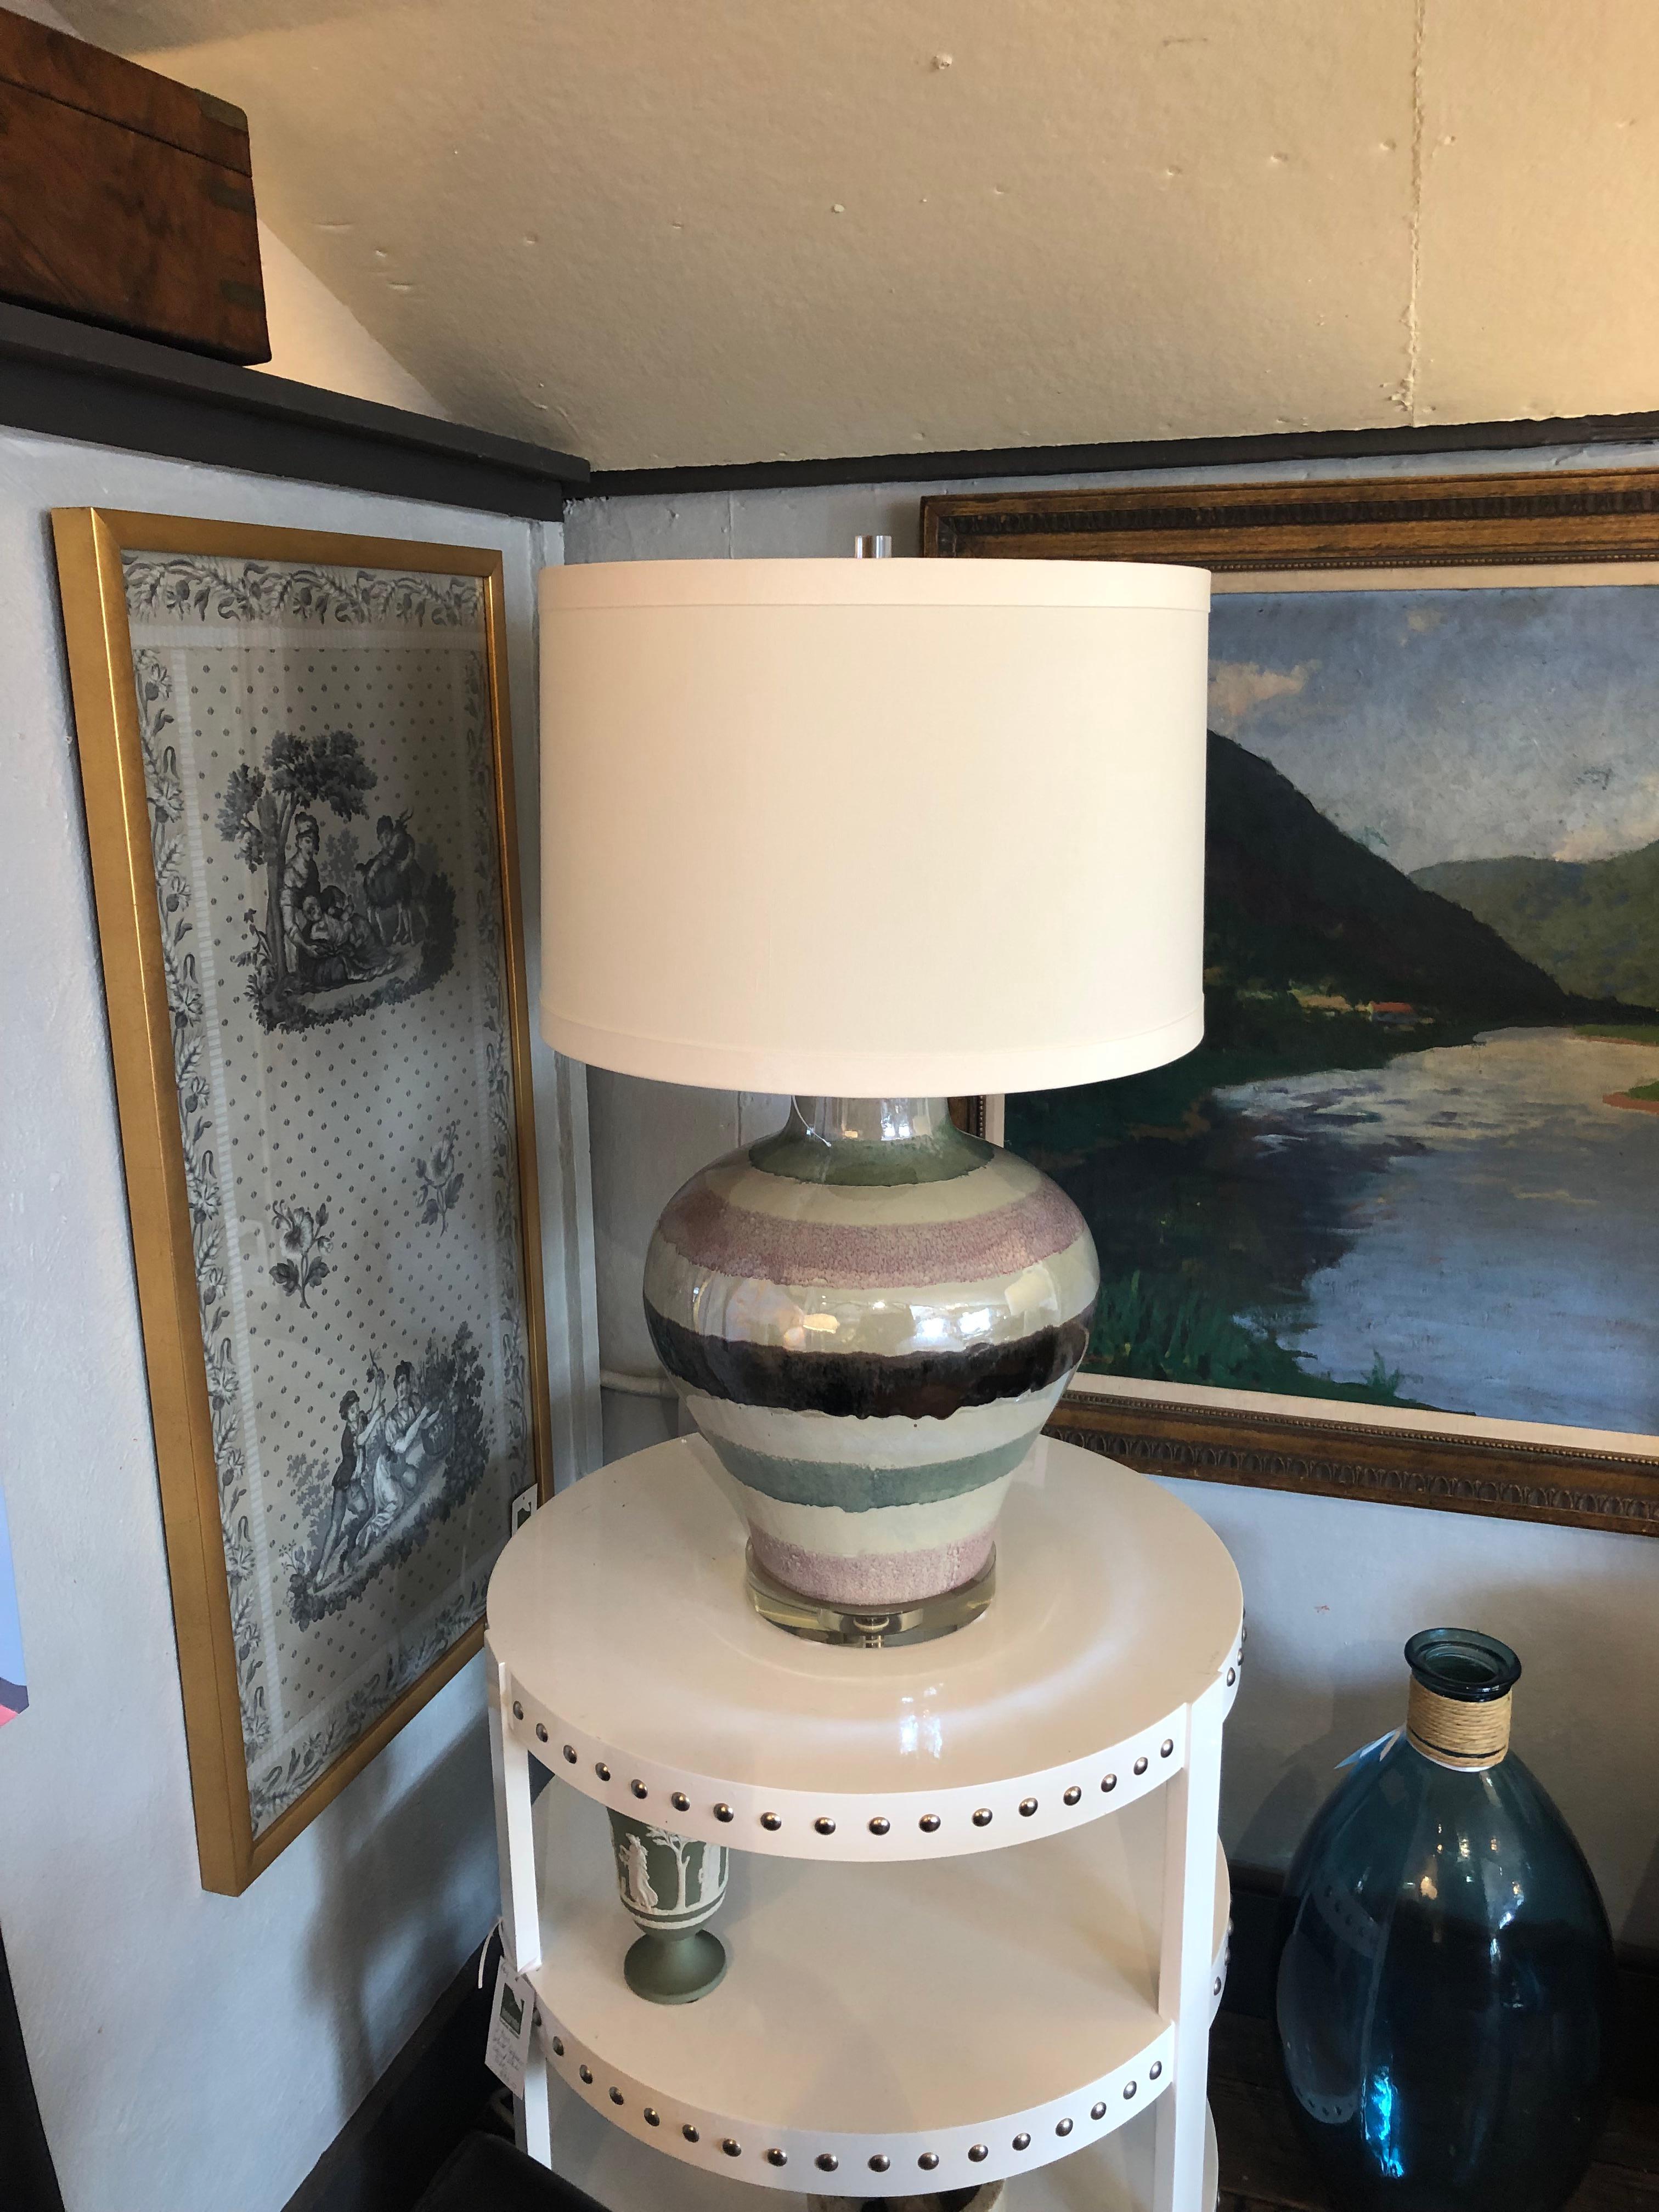 Superbe très grande lampe de table artisanale faite à la main avec une glaçure brillante et luxuriante dans des bandes horizontales de taupe, céladon, mauve et marron.
32